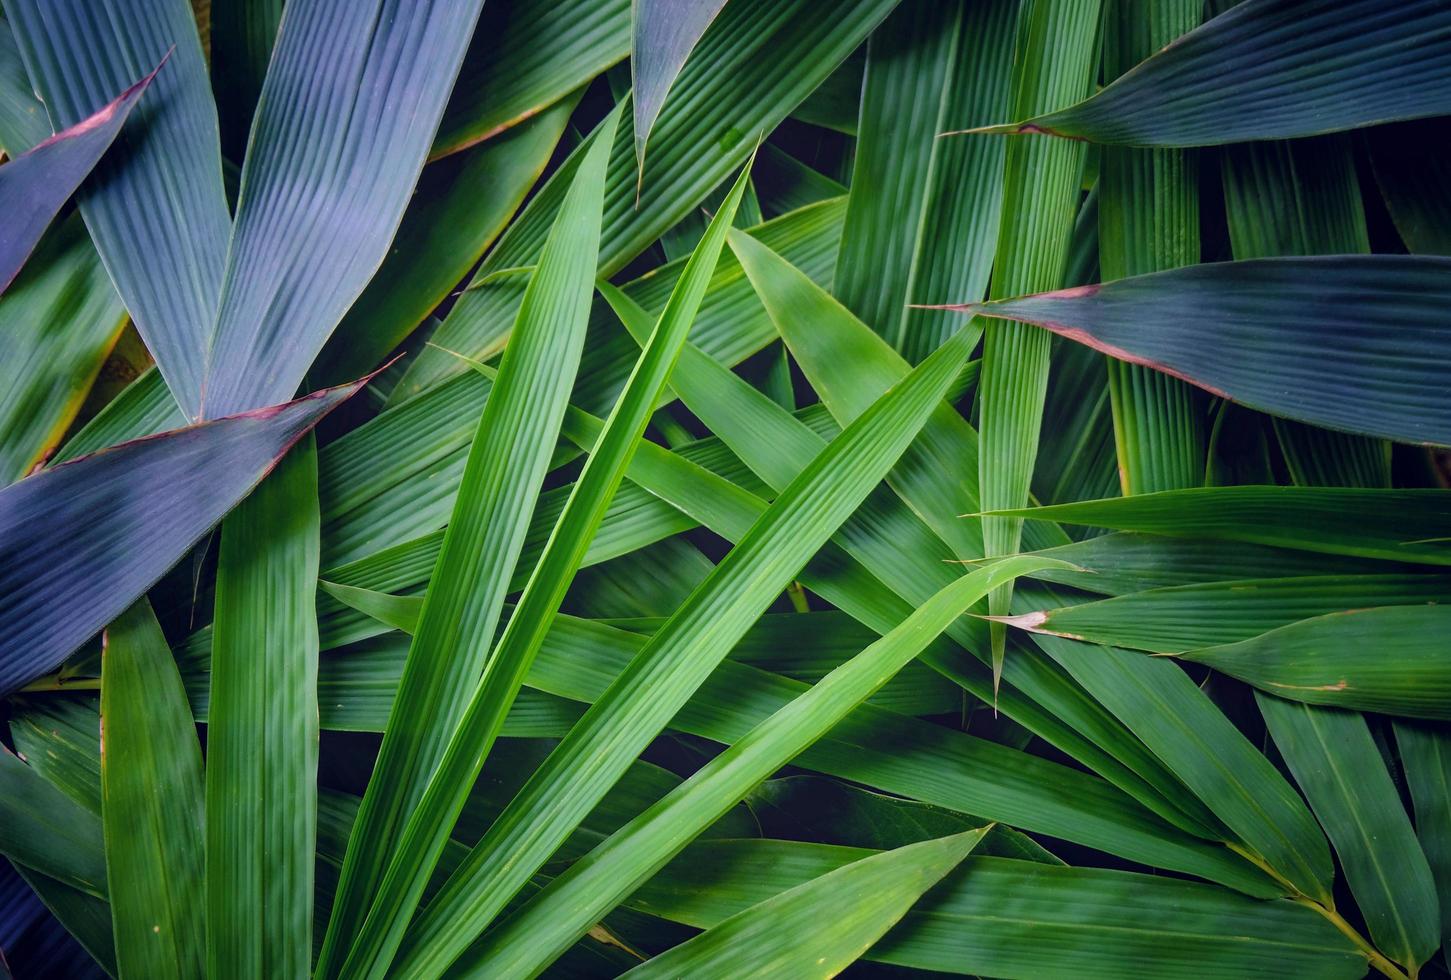 hojas de bambú verde claro y oscuro hermosas creativas para el fondo y la textura decorativos. El bambú es símbolo de China, Japón y en paz. foto